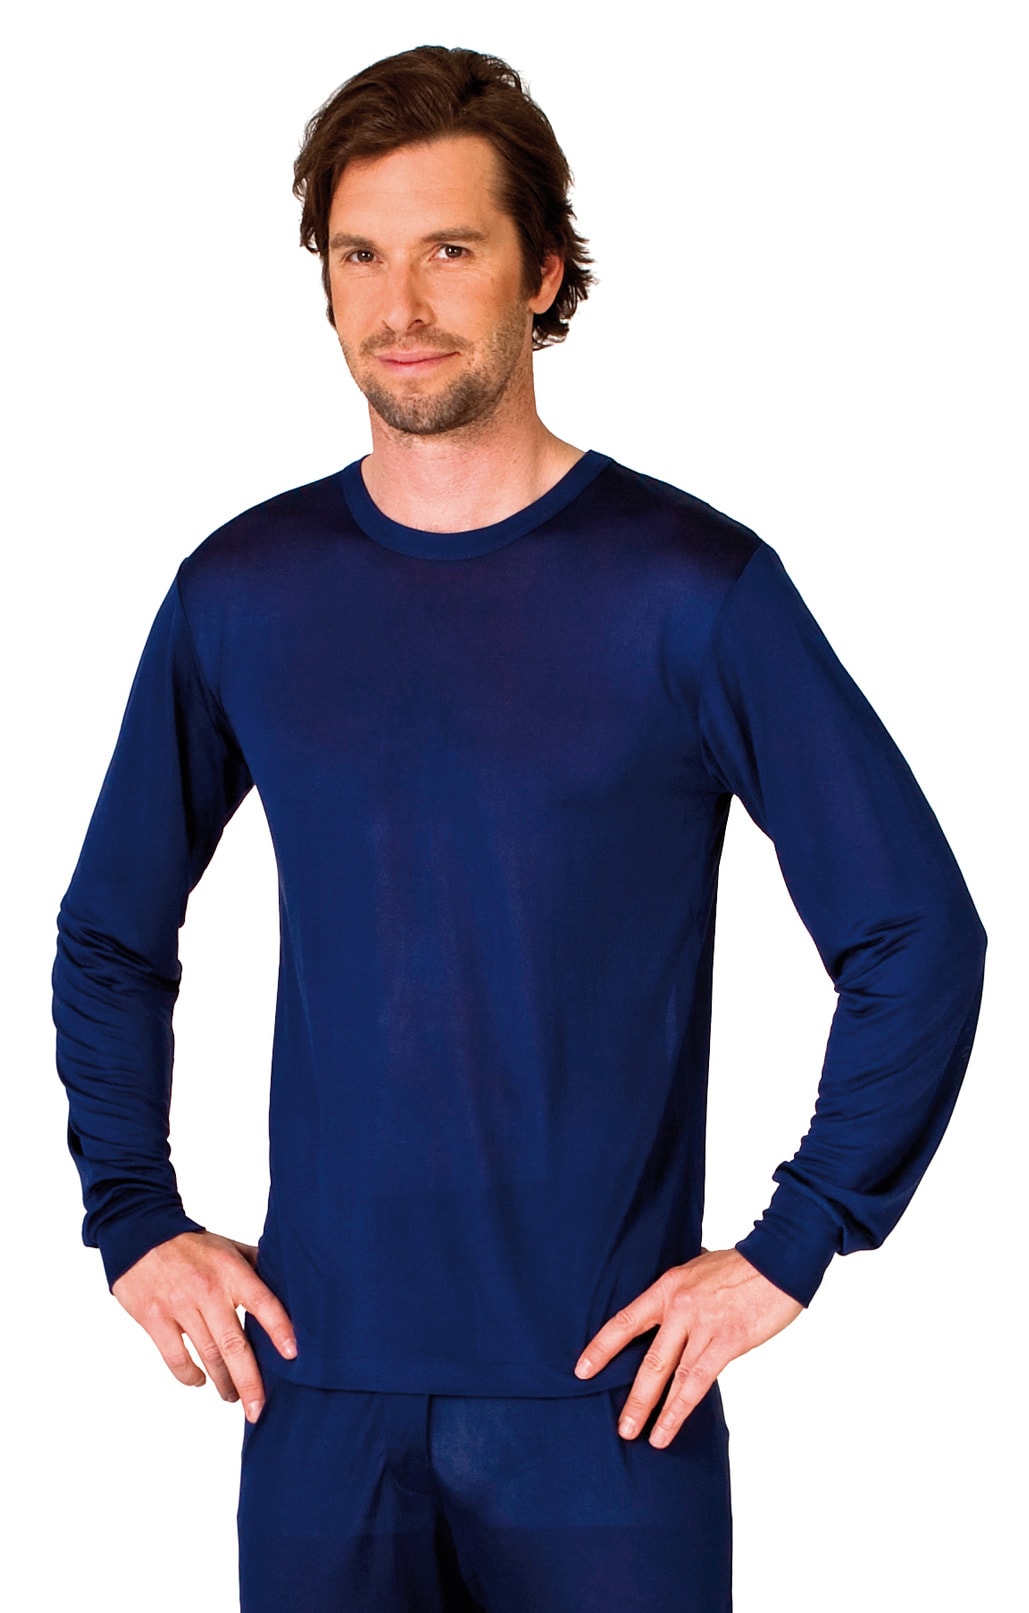 Silk shirt long sleeve navy blue